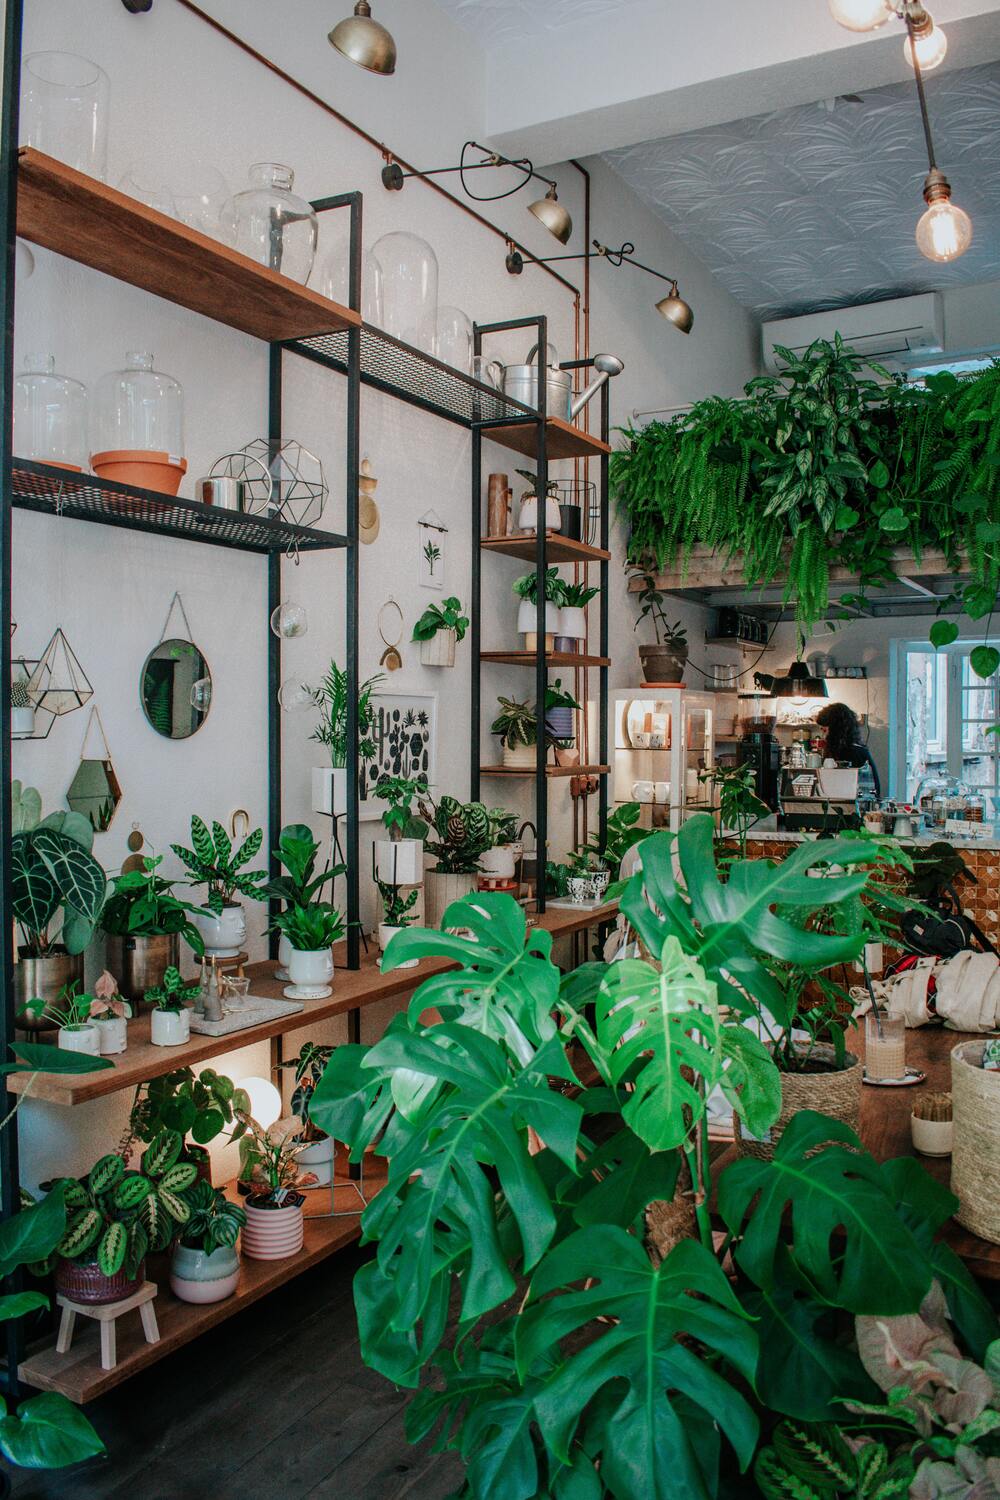 Dschungelartige Küche oder Café mit einem Tresen, davor buschige Pflanzen auf dem Boden, kleinere auf mehreren Ebenen eines Wandregals und Farnen über der Theke